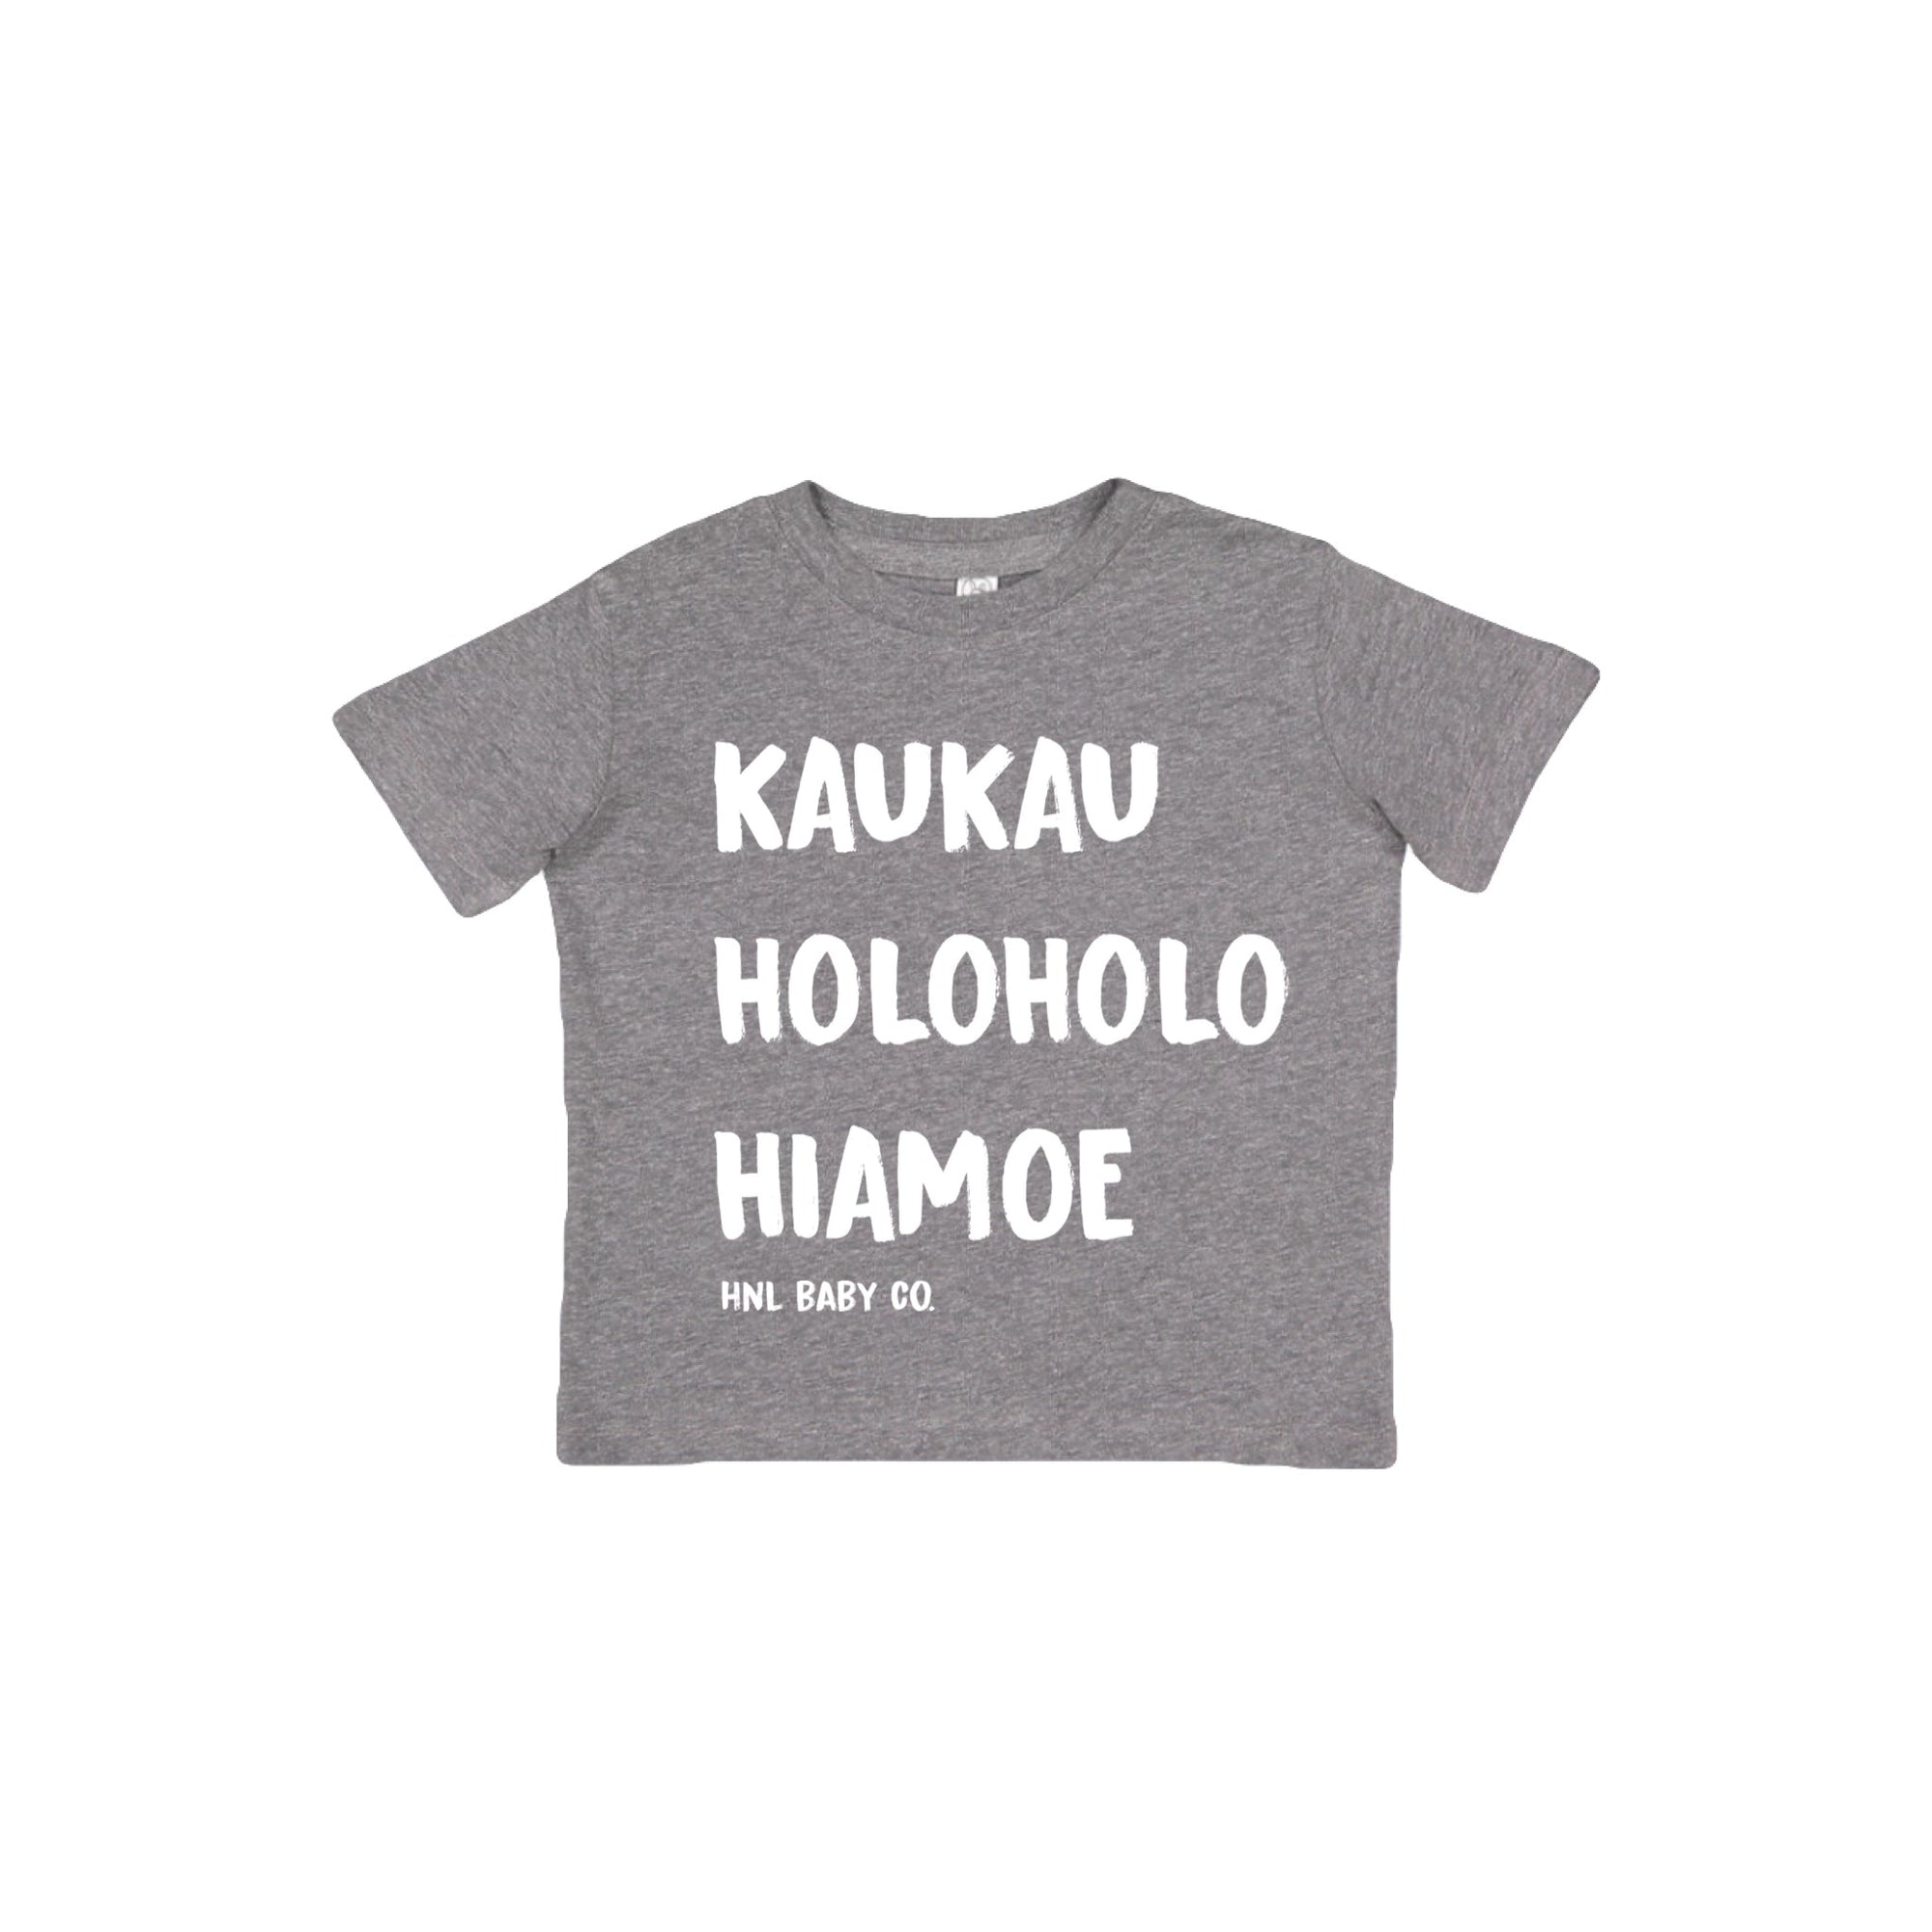 Pop-Up Mākeke - Honolulu Baby Co. - Kaukau, Holoholo, Hiamoe Toddler T-Shirt